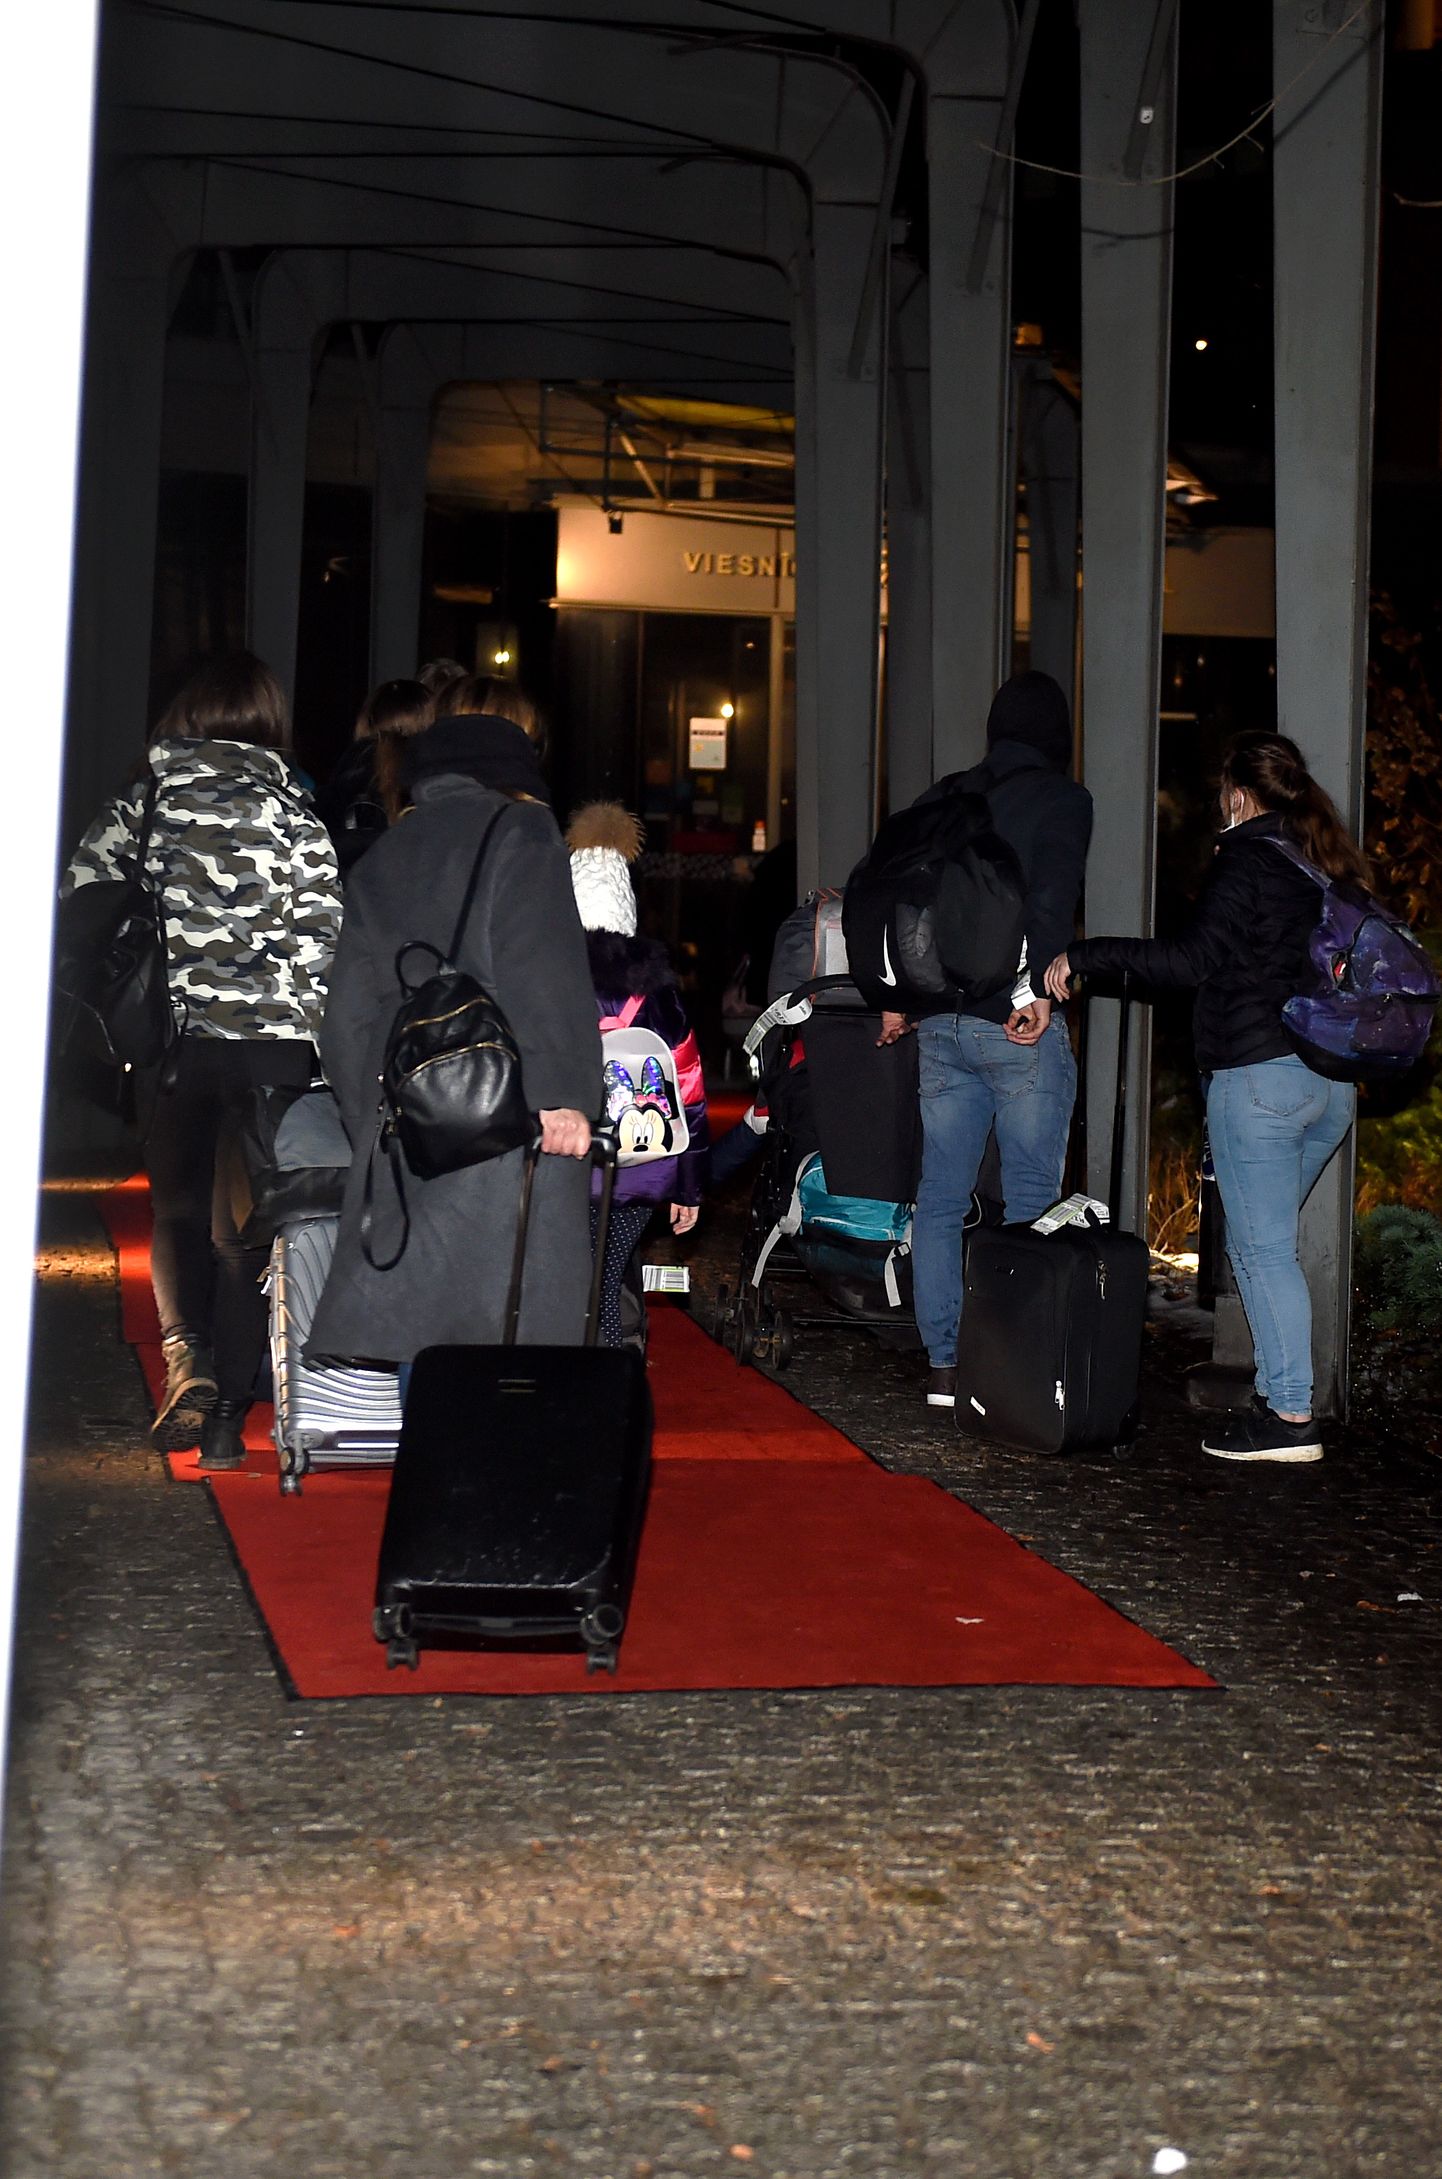 Latvijas valstspiederīgie, kuri koronavīrusa izraisītās slimības "Covid-19" krīzes laikā atgriezušies ar Latvijas nacionālās lidsabiedrības "airBaltic" repatriācijas reisu no Apvienotās Karalistes, tiek izvietoti pašizolācijā viesnīcā "Rixwell Elefant Hotel".